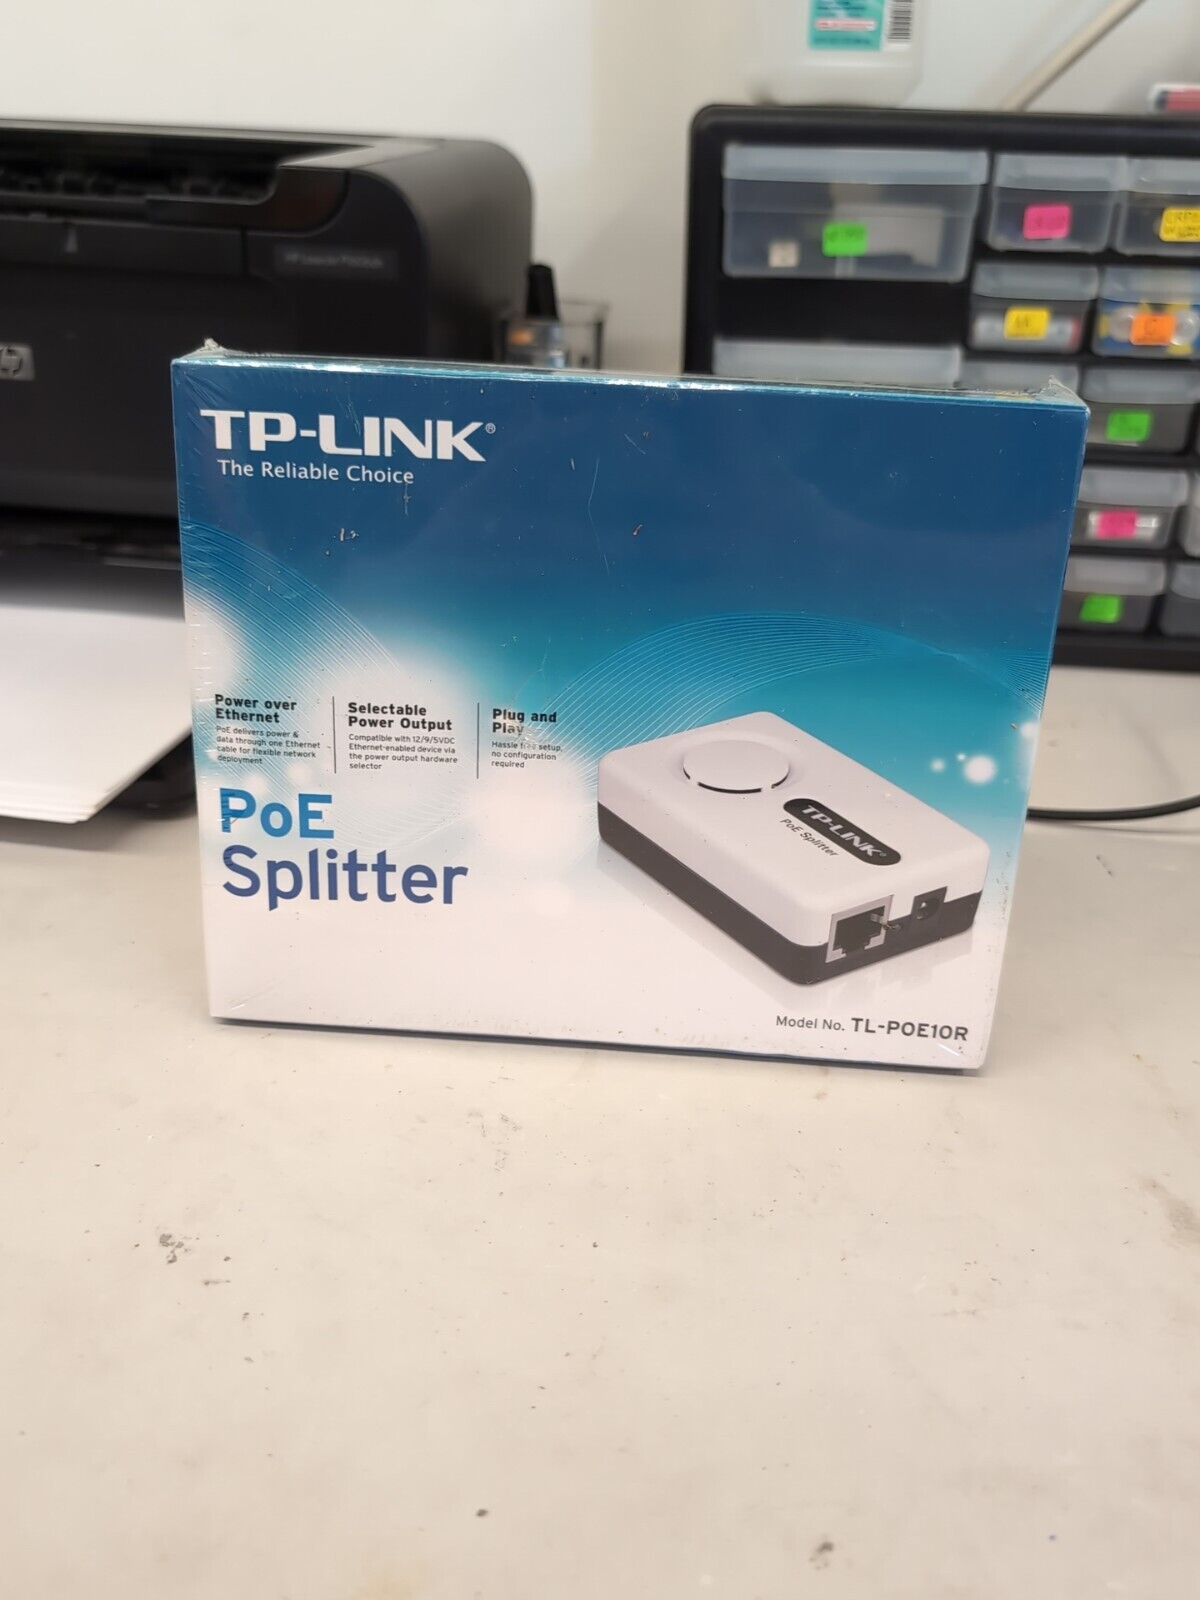 New TP-LINK Gigabit PoE Splitter TL-POE10R